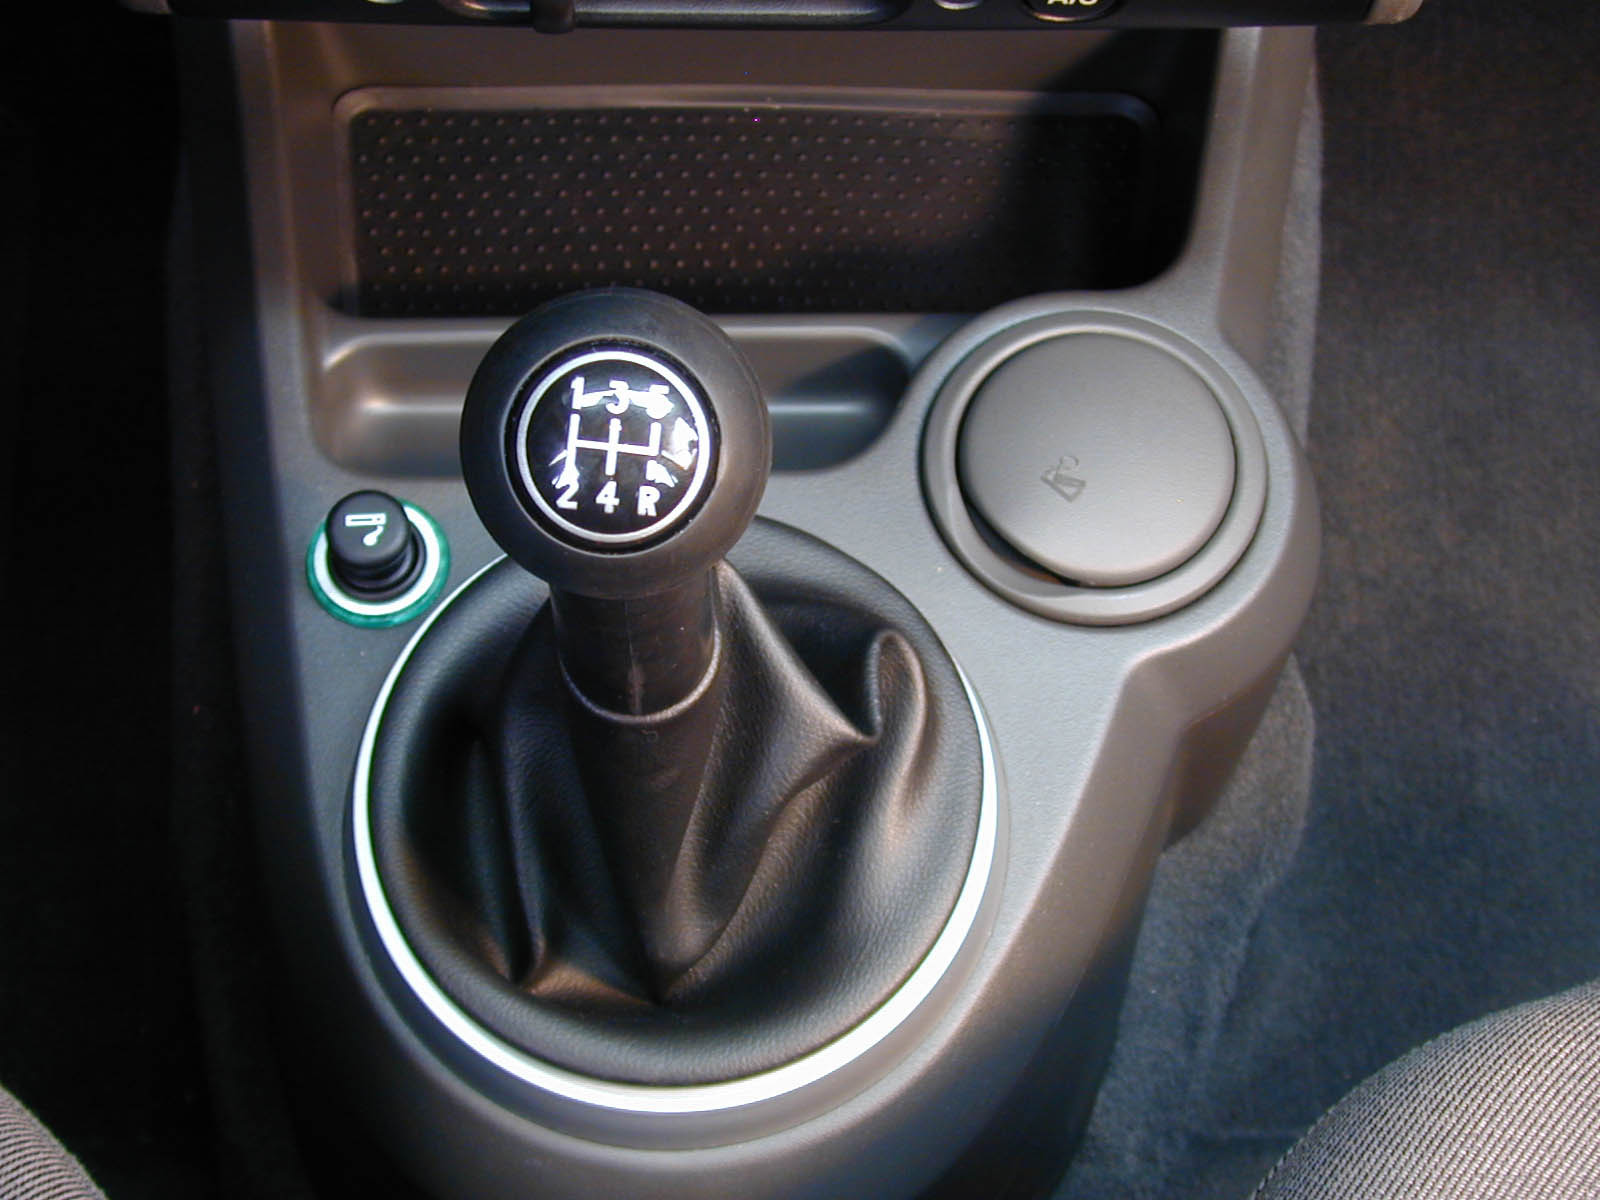 Porta-copos ao lado do câmbio do EcoSport 2.0 16V XLT, utilitário esportivo da Ford.